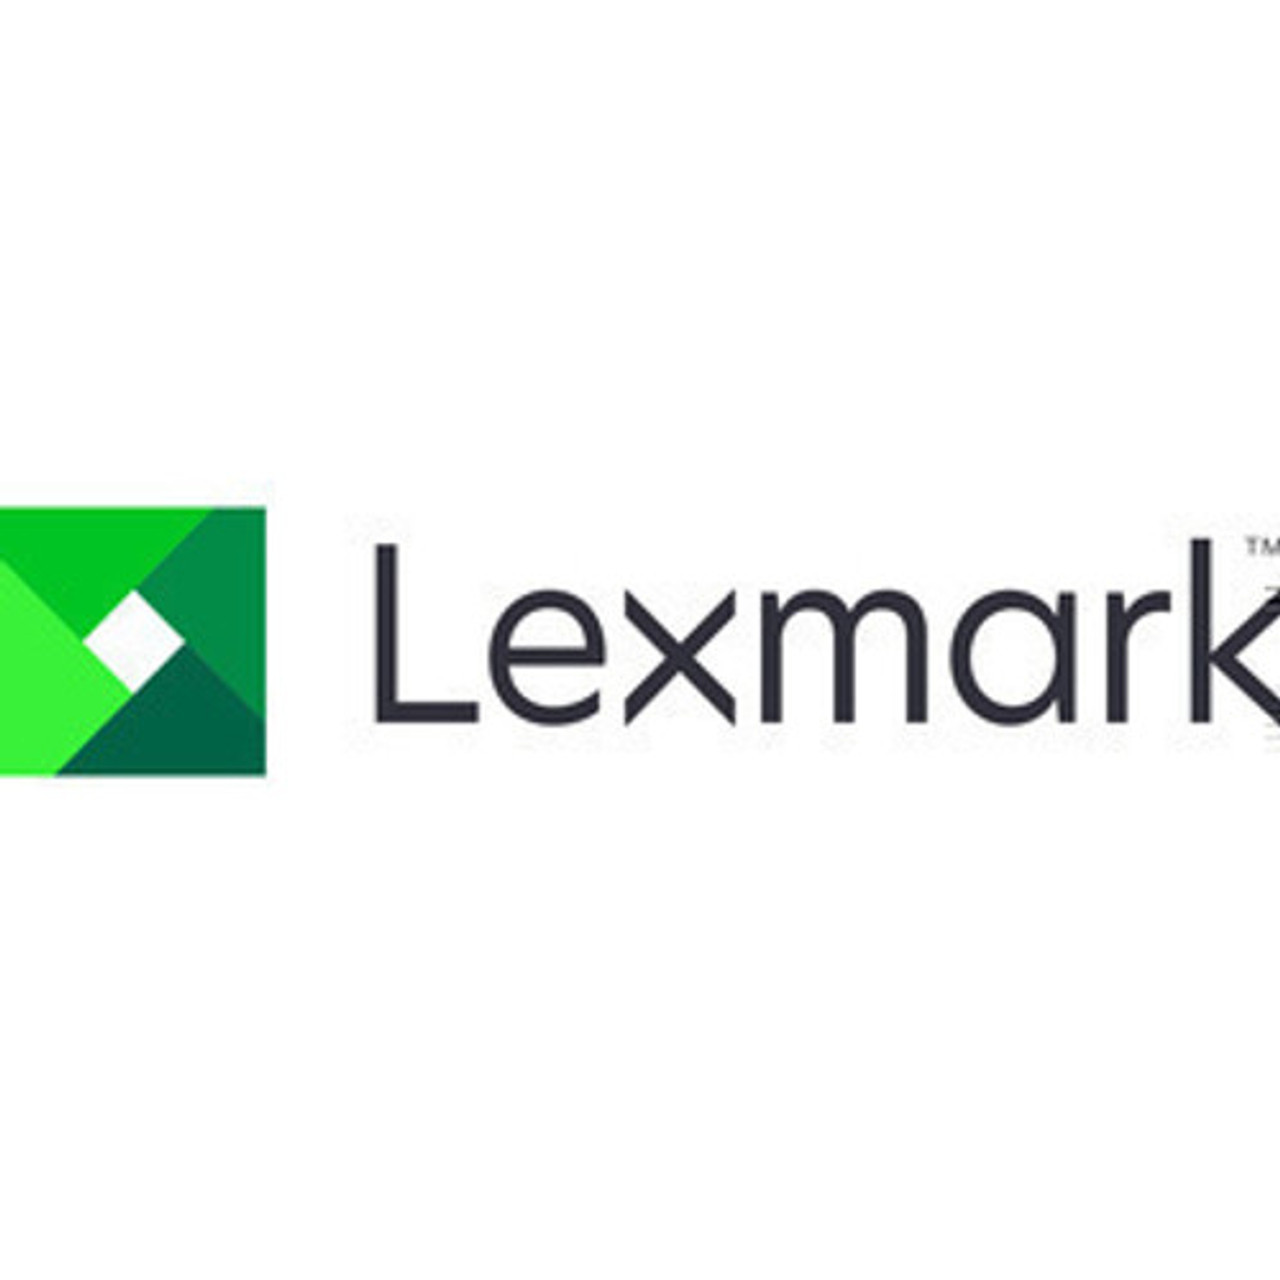 Lexmark 4 YEAR ONSITE REPAIR - RENEWAL - MS822 - 2364847